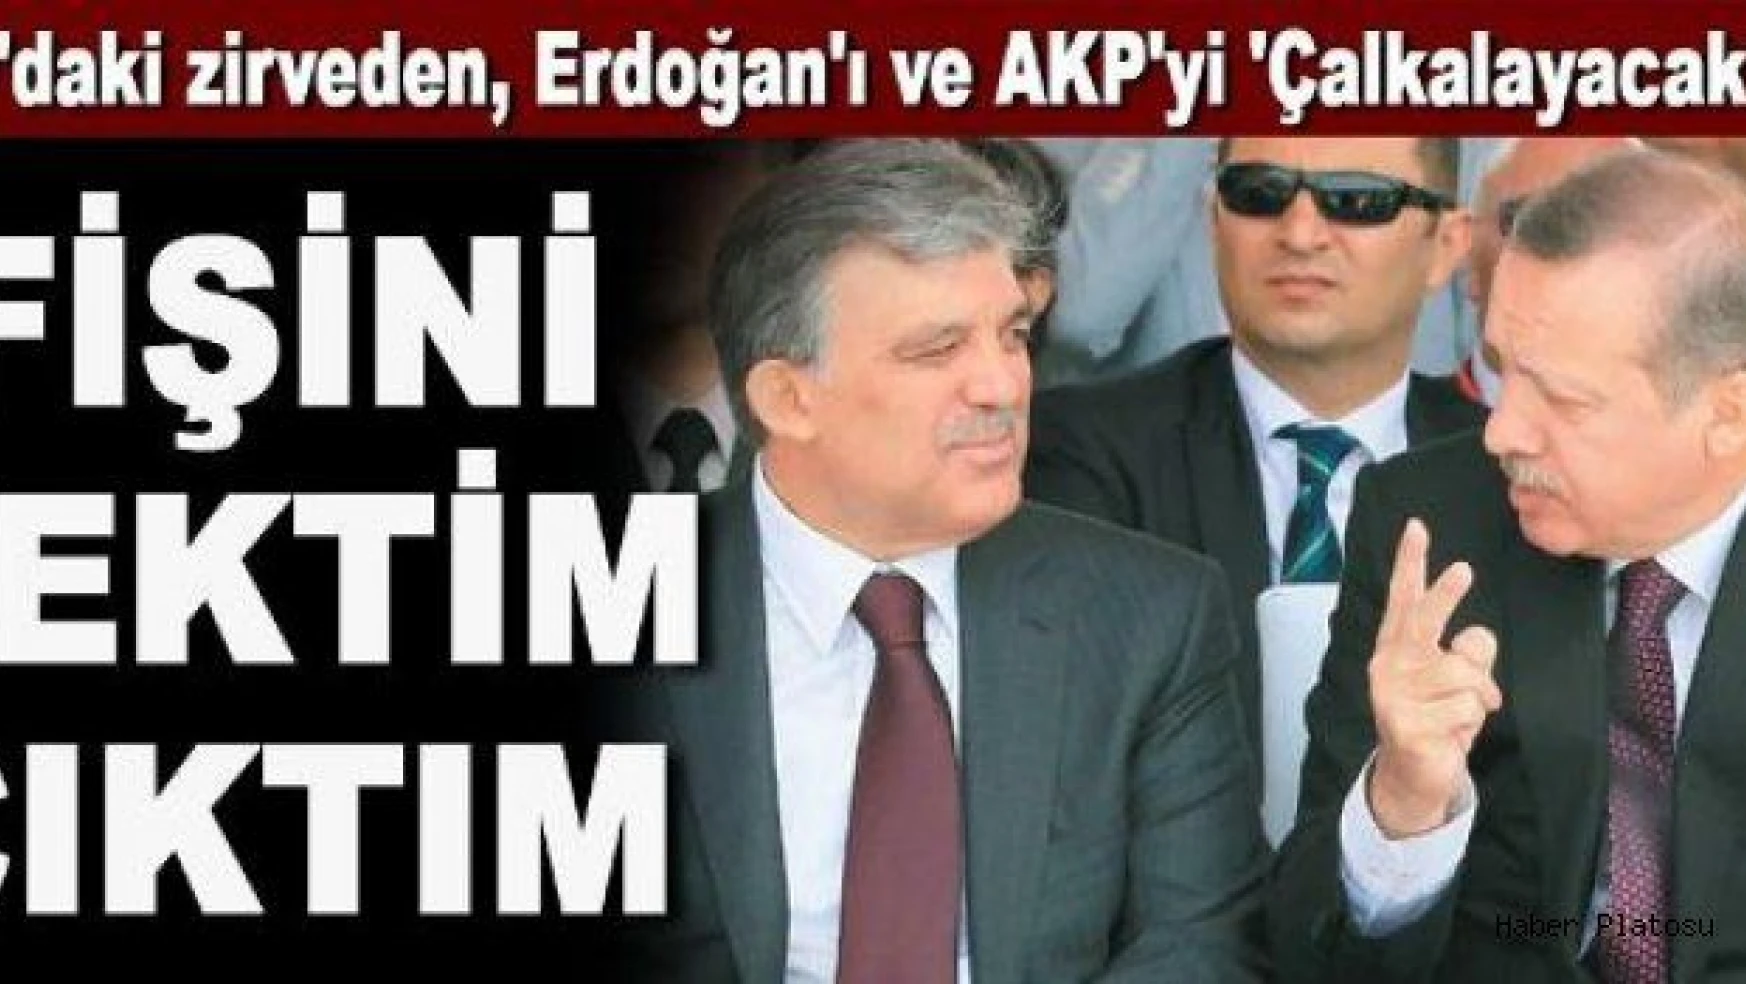 Gül, Erdoğan için 'Fişini çektim çıktım' dedi mi?